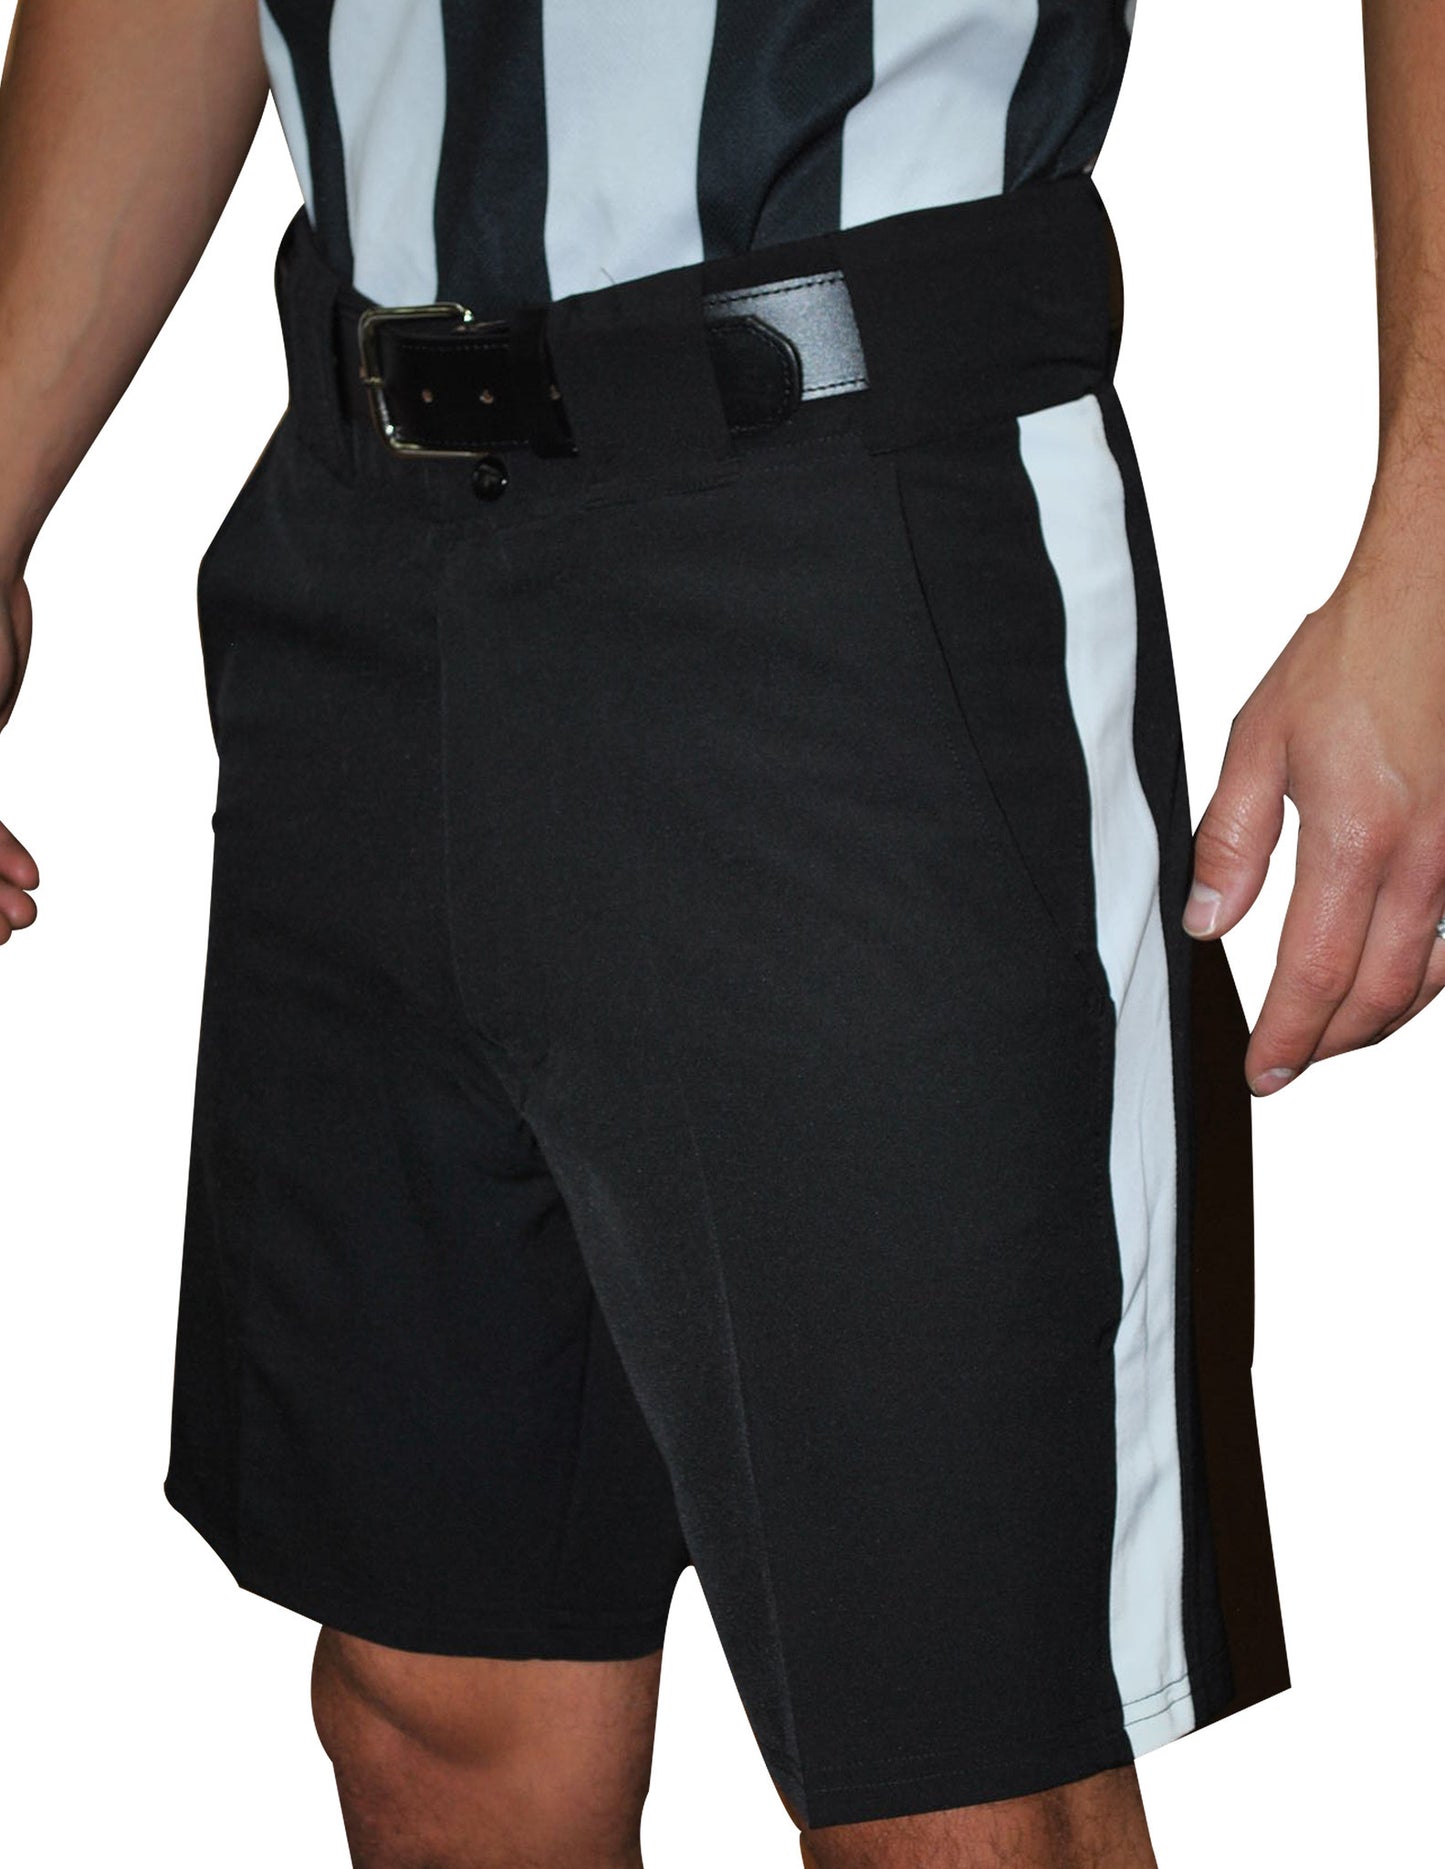 FBS180-Smitty Black Football Shorts w 1 1/4" White Stripe